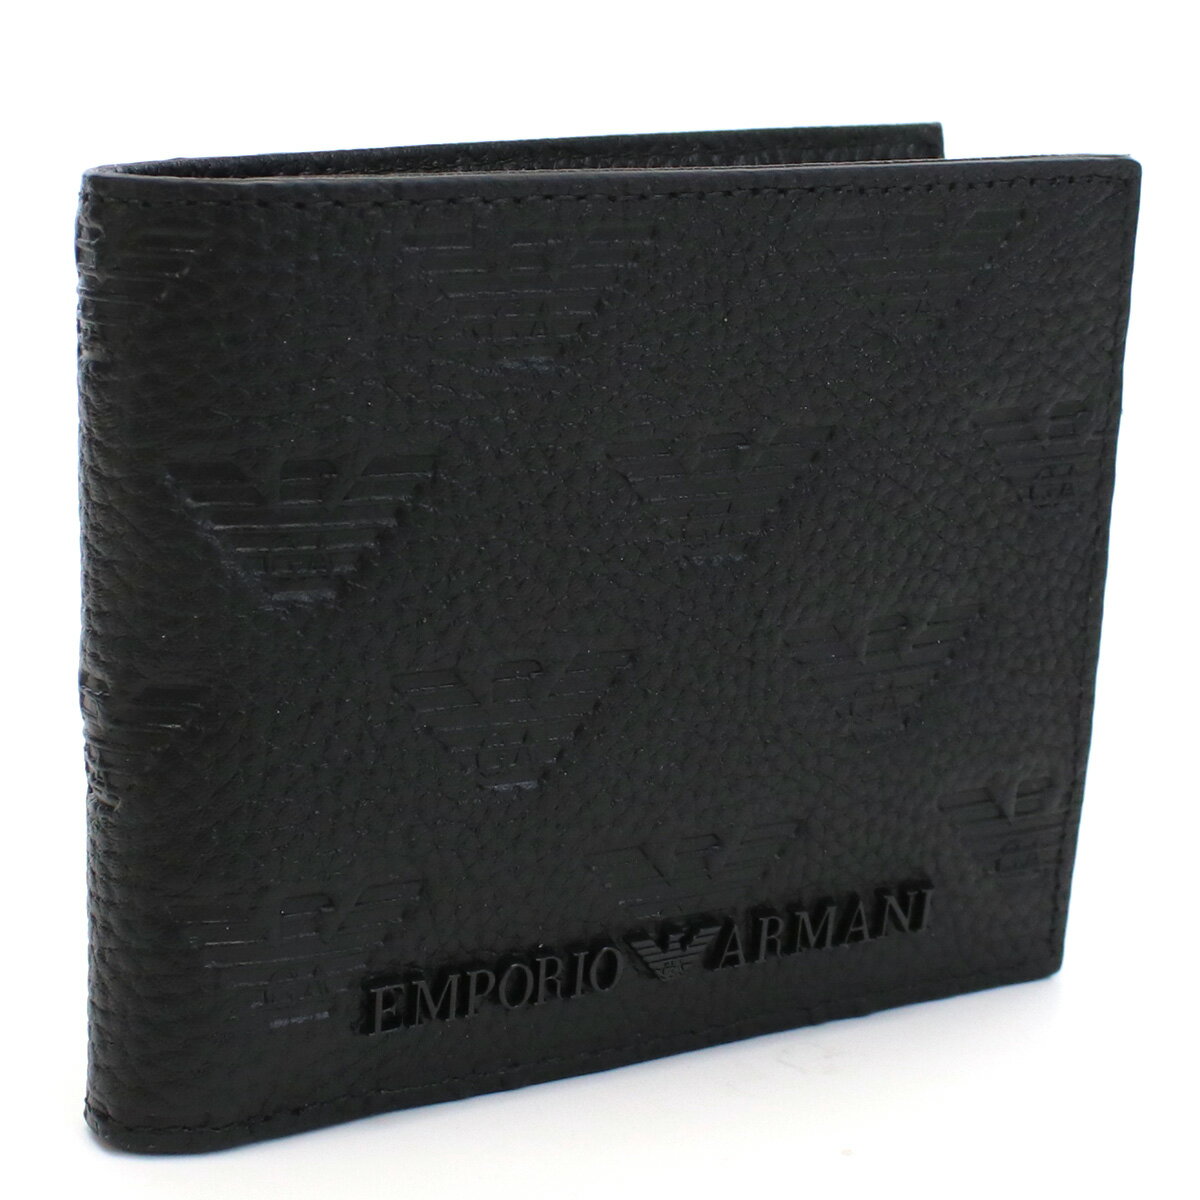 アルマーニ エンポリオアルマーニ EMPORIO ARMANI 2つ折り財布 ブランド ミニ財布 YEM122 Y142V 81072 BLACK ブラック wallet-01 mini-01 gsm-2 new-05